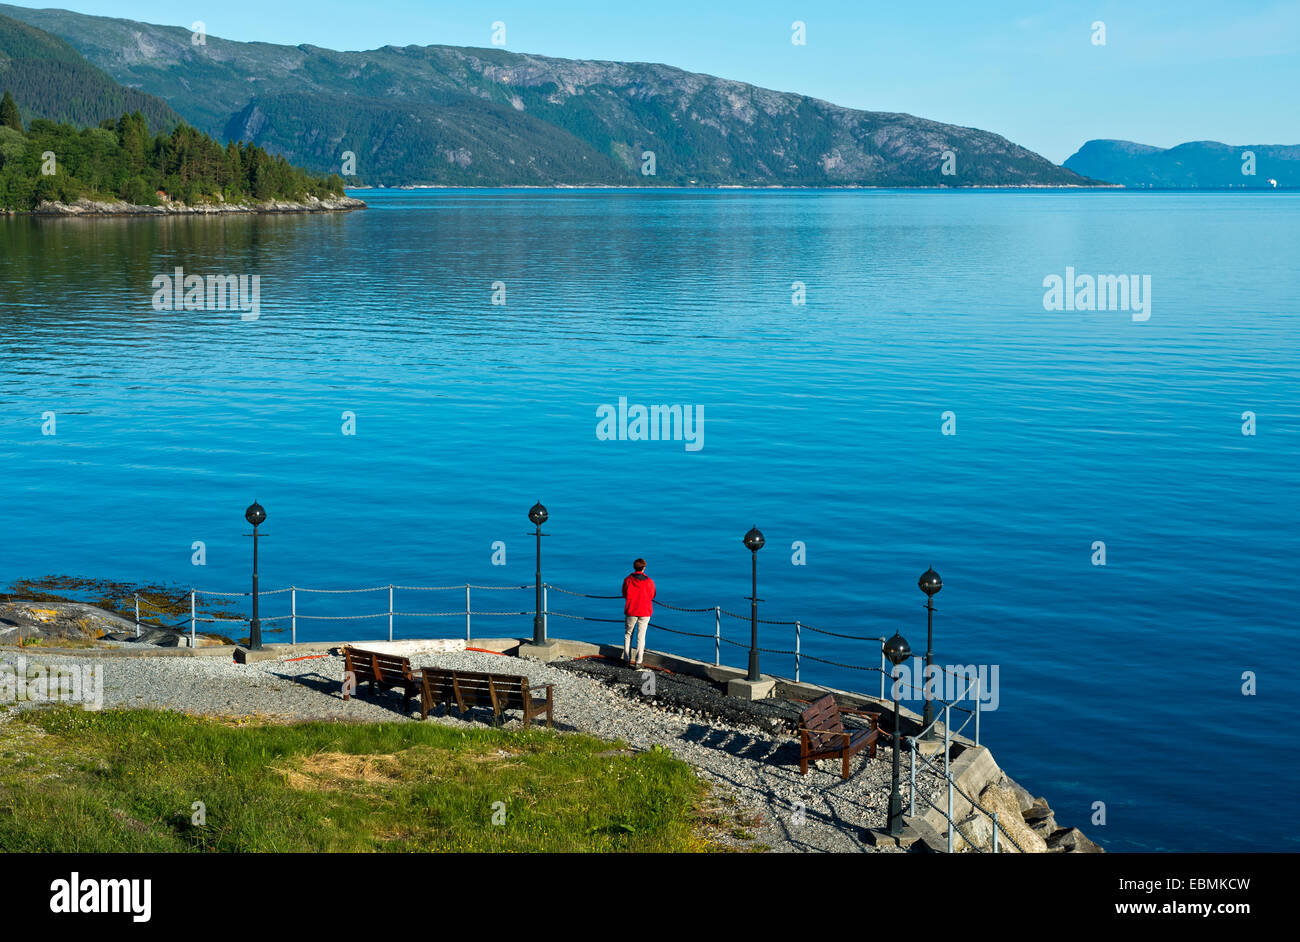 On the banks of the Sognefjord, Brekke, Sogn og Fjordane, Norway Stock Photo